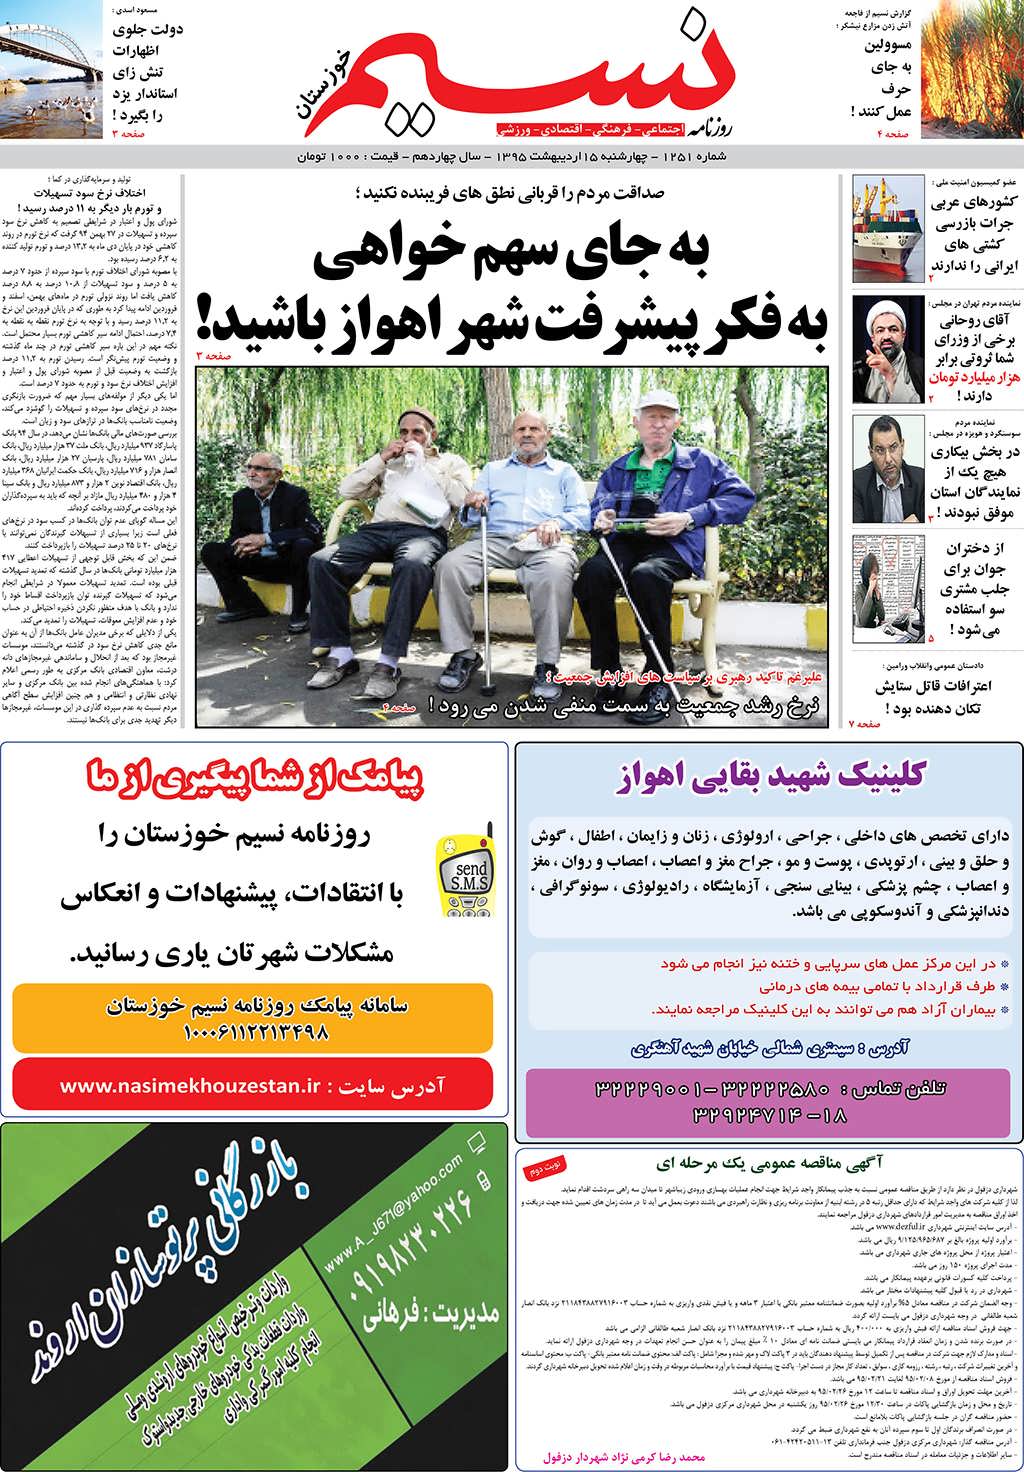 صفحه اصلی روزنامه نسیم شماره 1251